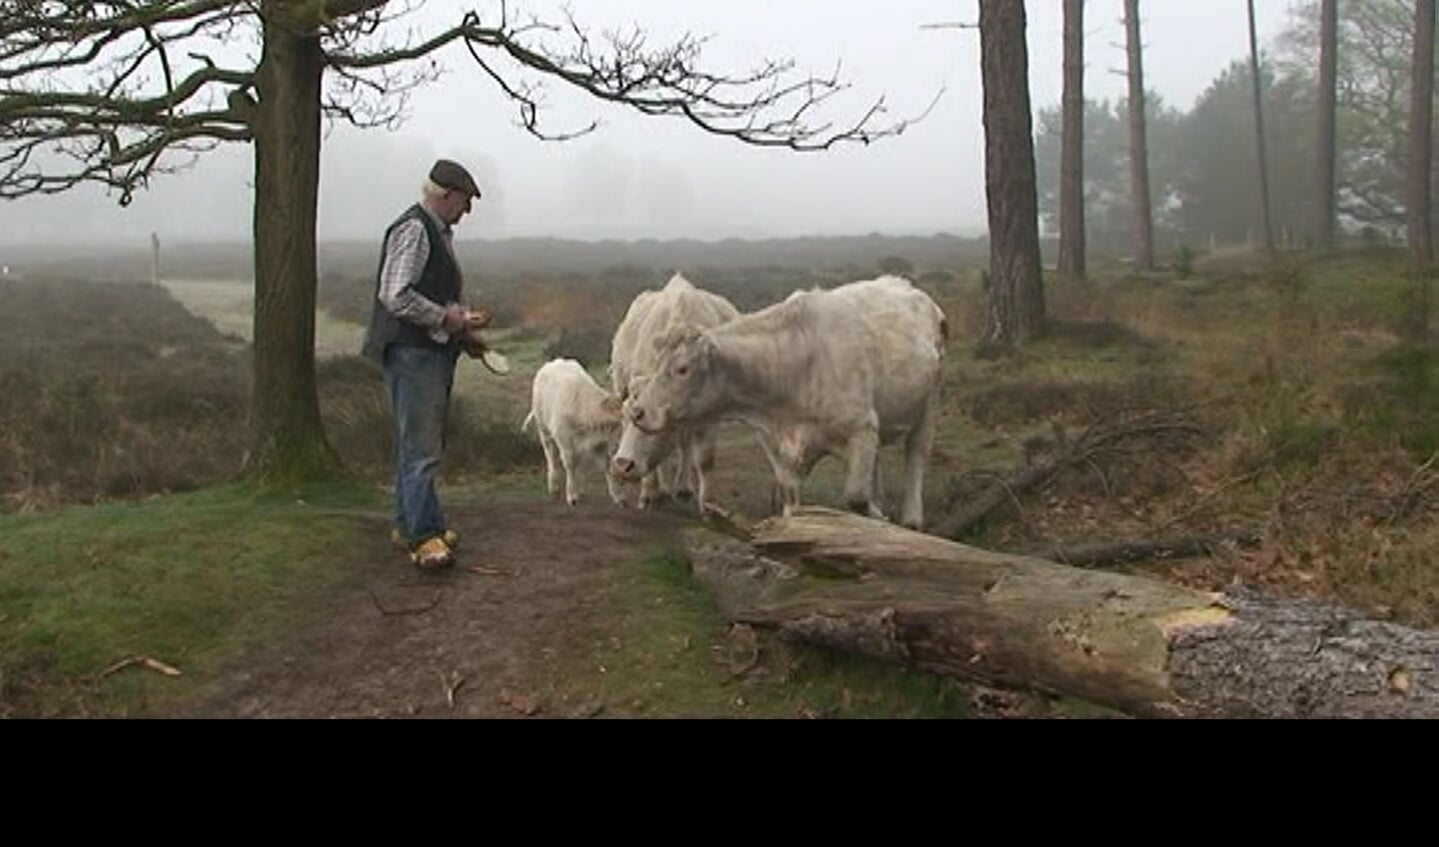 Charolais op de Hollandse hei. Wout Stormbroek heeft een uitzonderlijke band met zijn dieren. (foto Karien Scholten, 2014)